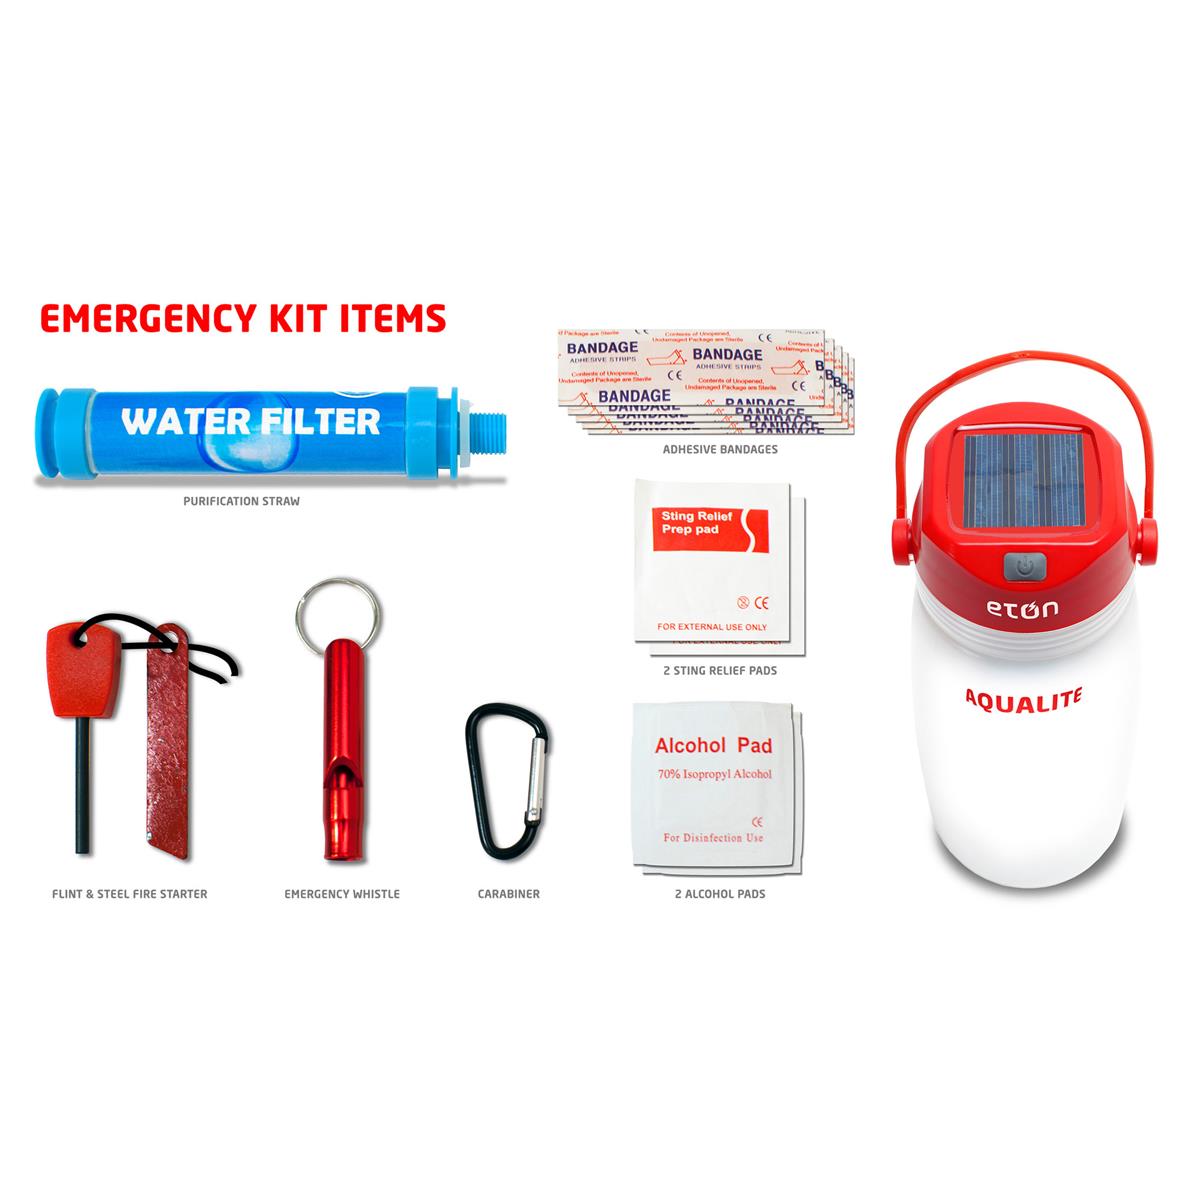 Image of Eton 72-Hour Emergency Kit